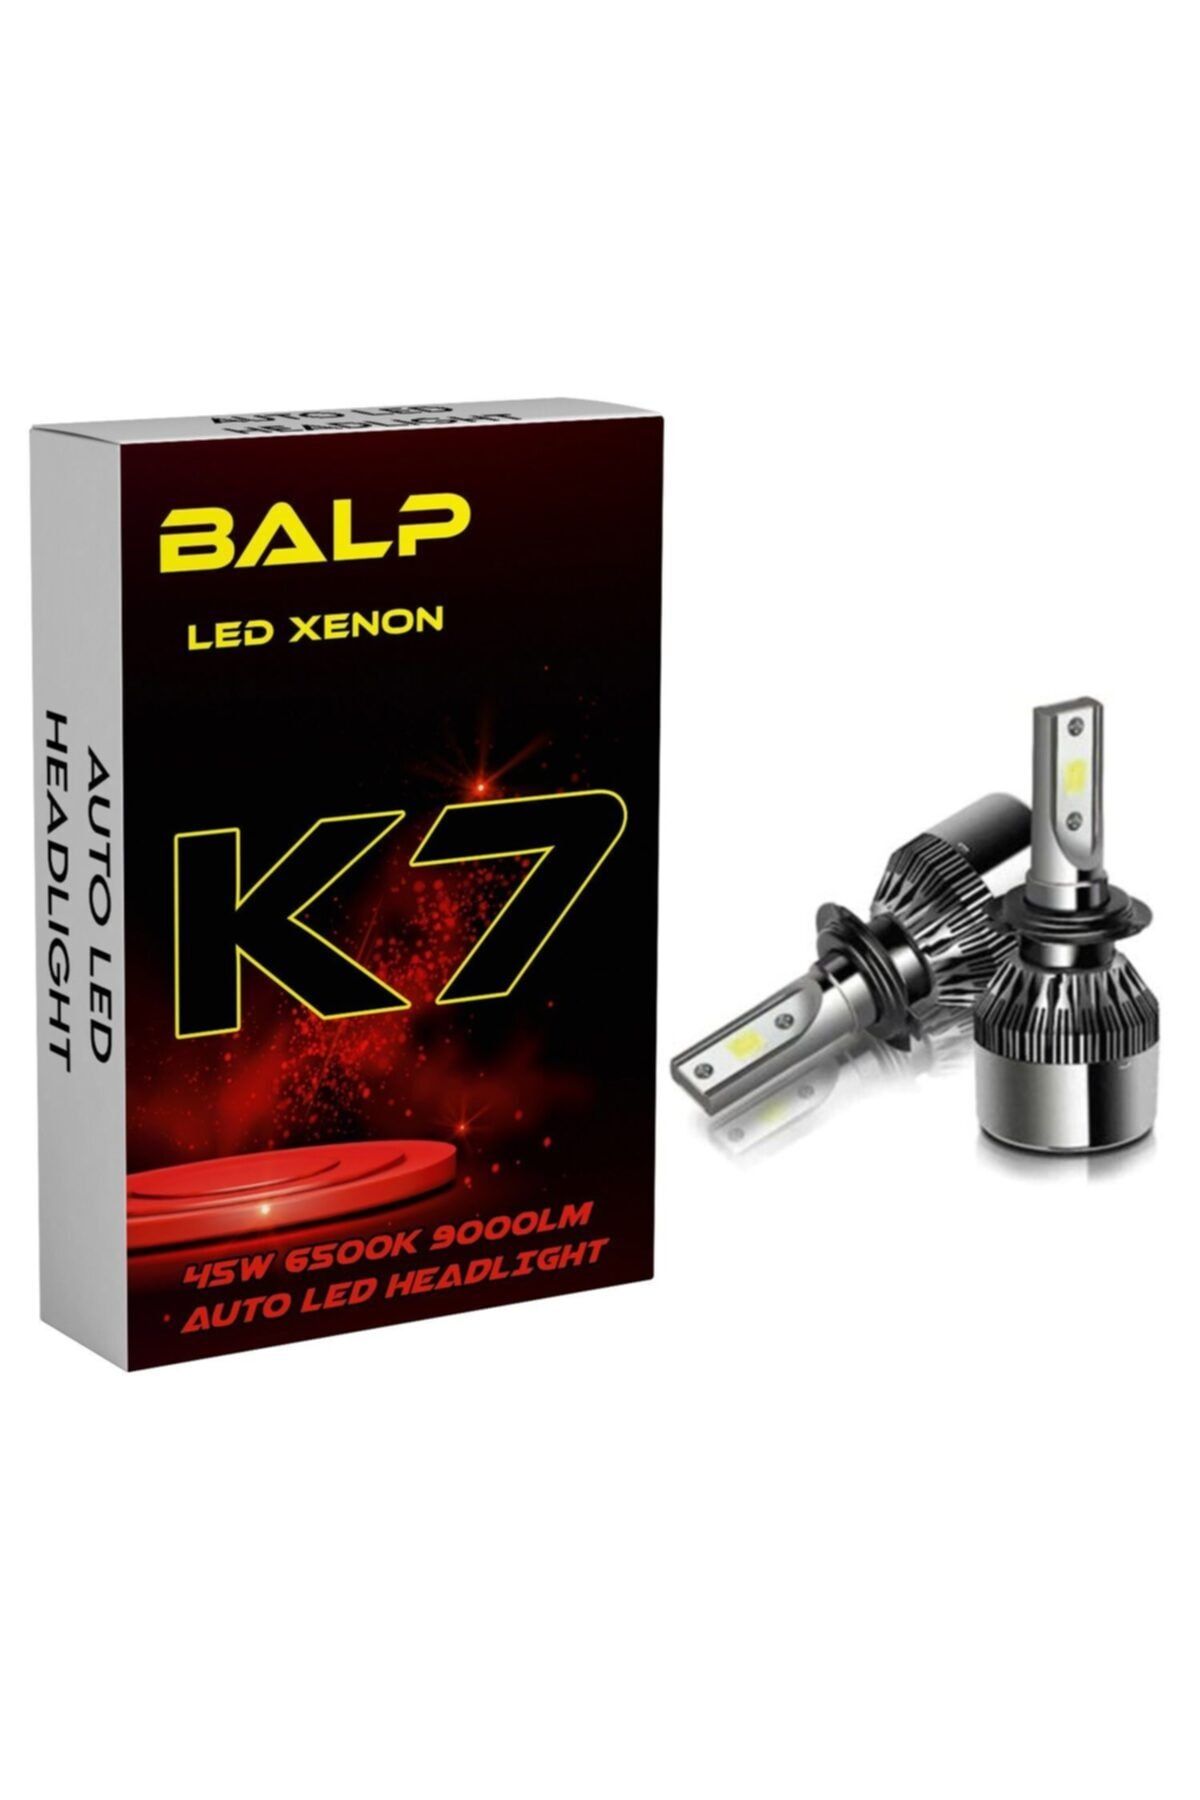 BALP K7 Beyaz Renk Led Zenon H1 Led Xenon 45w 9000lm Far Ampülü Şimşek Etkili